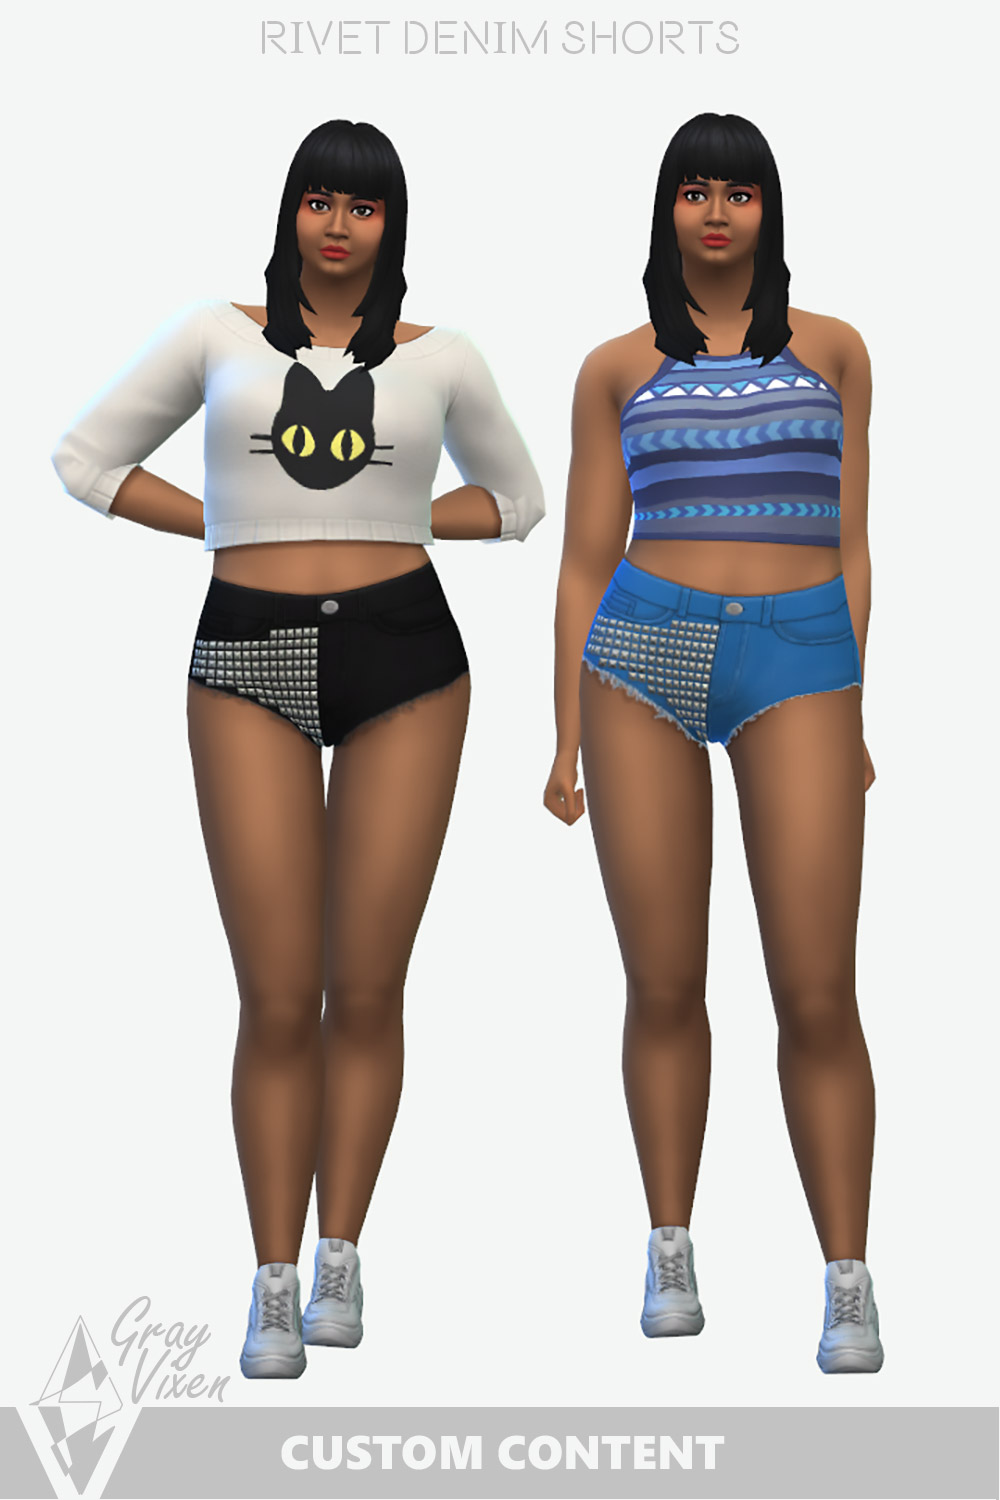 The Sims 4 Mini Shorts